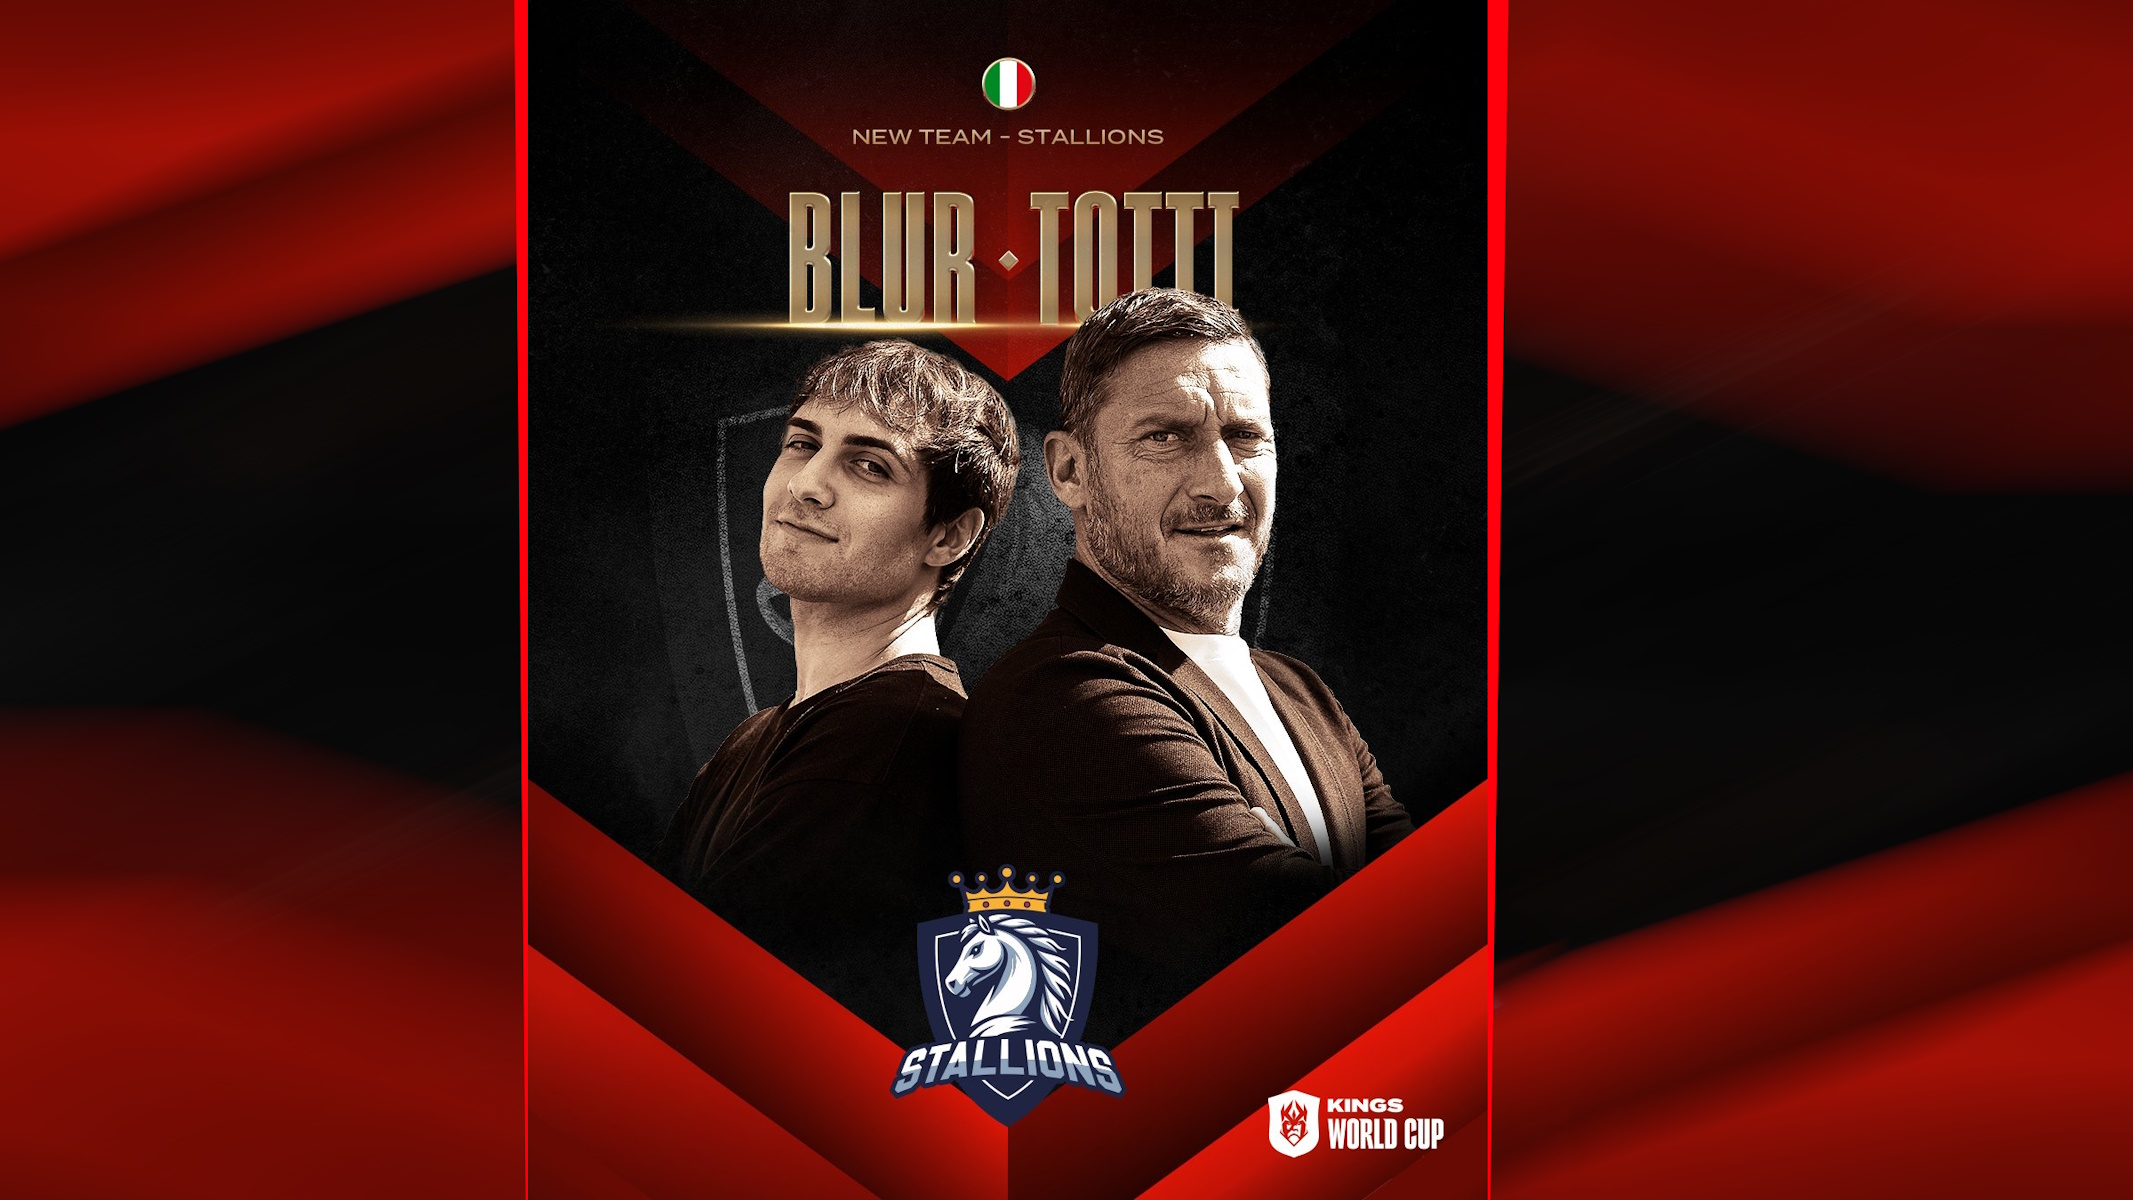 Blur e Totti rappresenteranno l'Italia con il loro team Stallions alla Kings World Cup